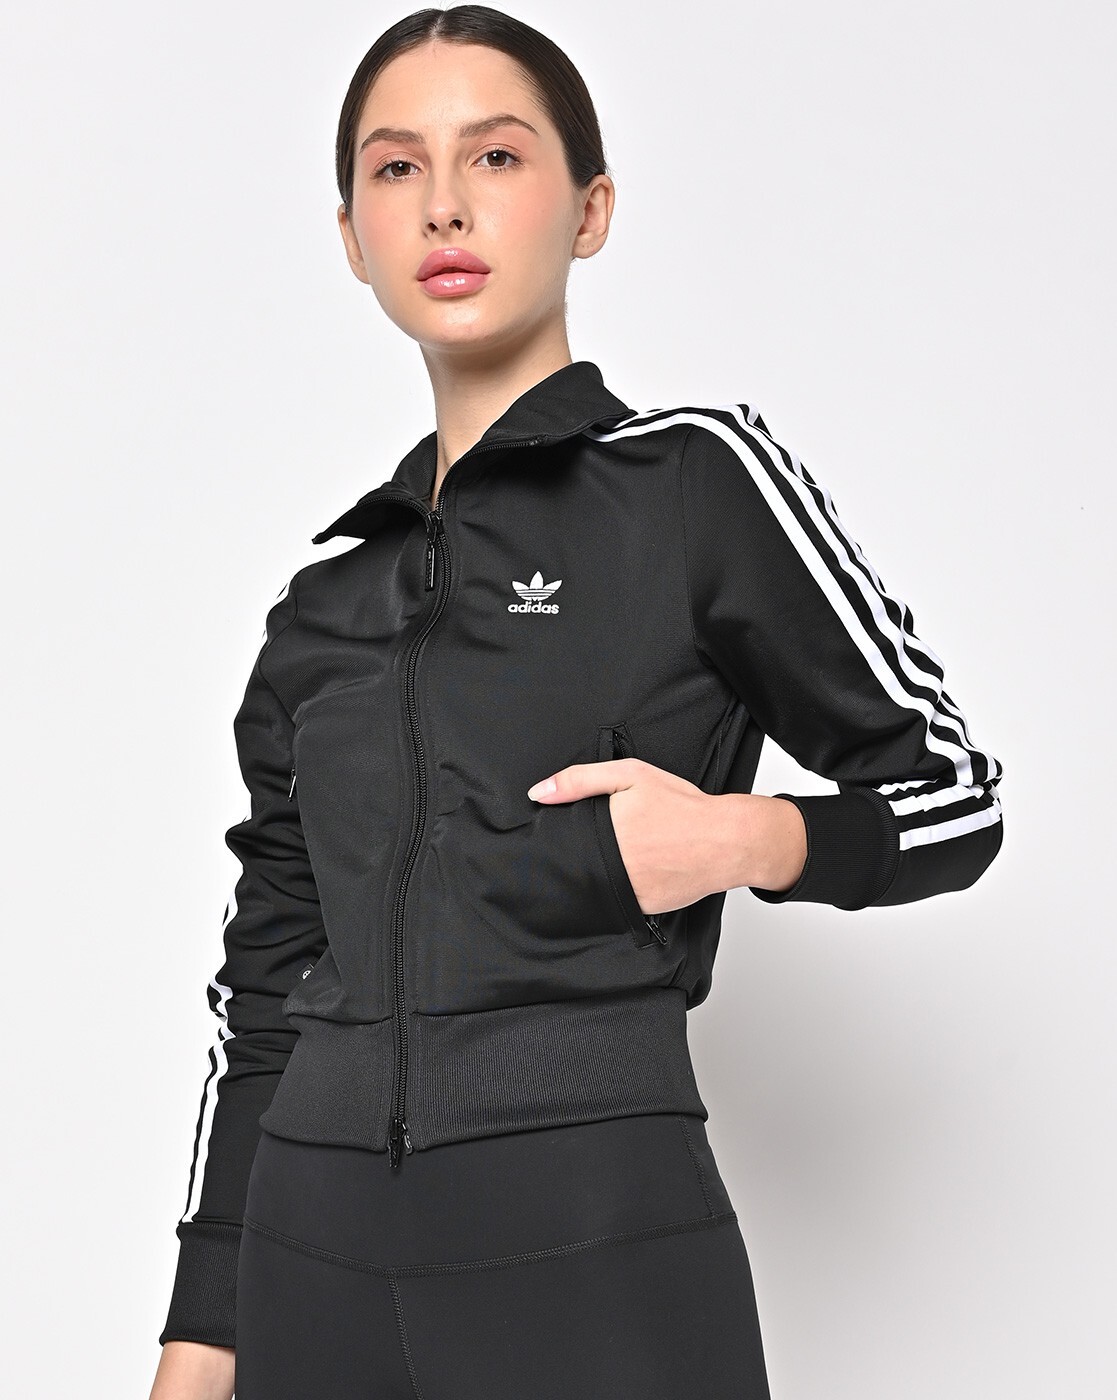 Adidas Originals Firebird Track Jacket Full Zip Track Top Women's